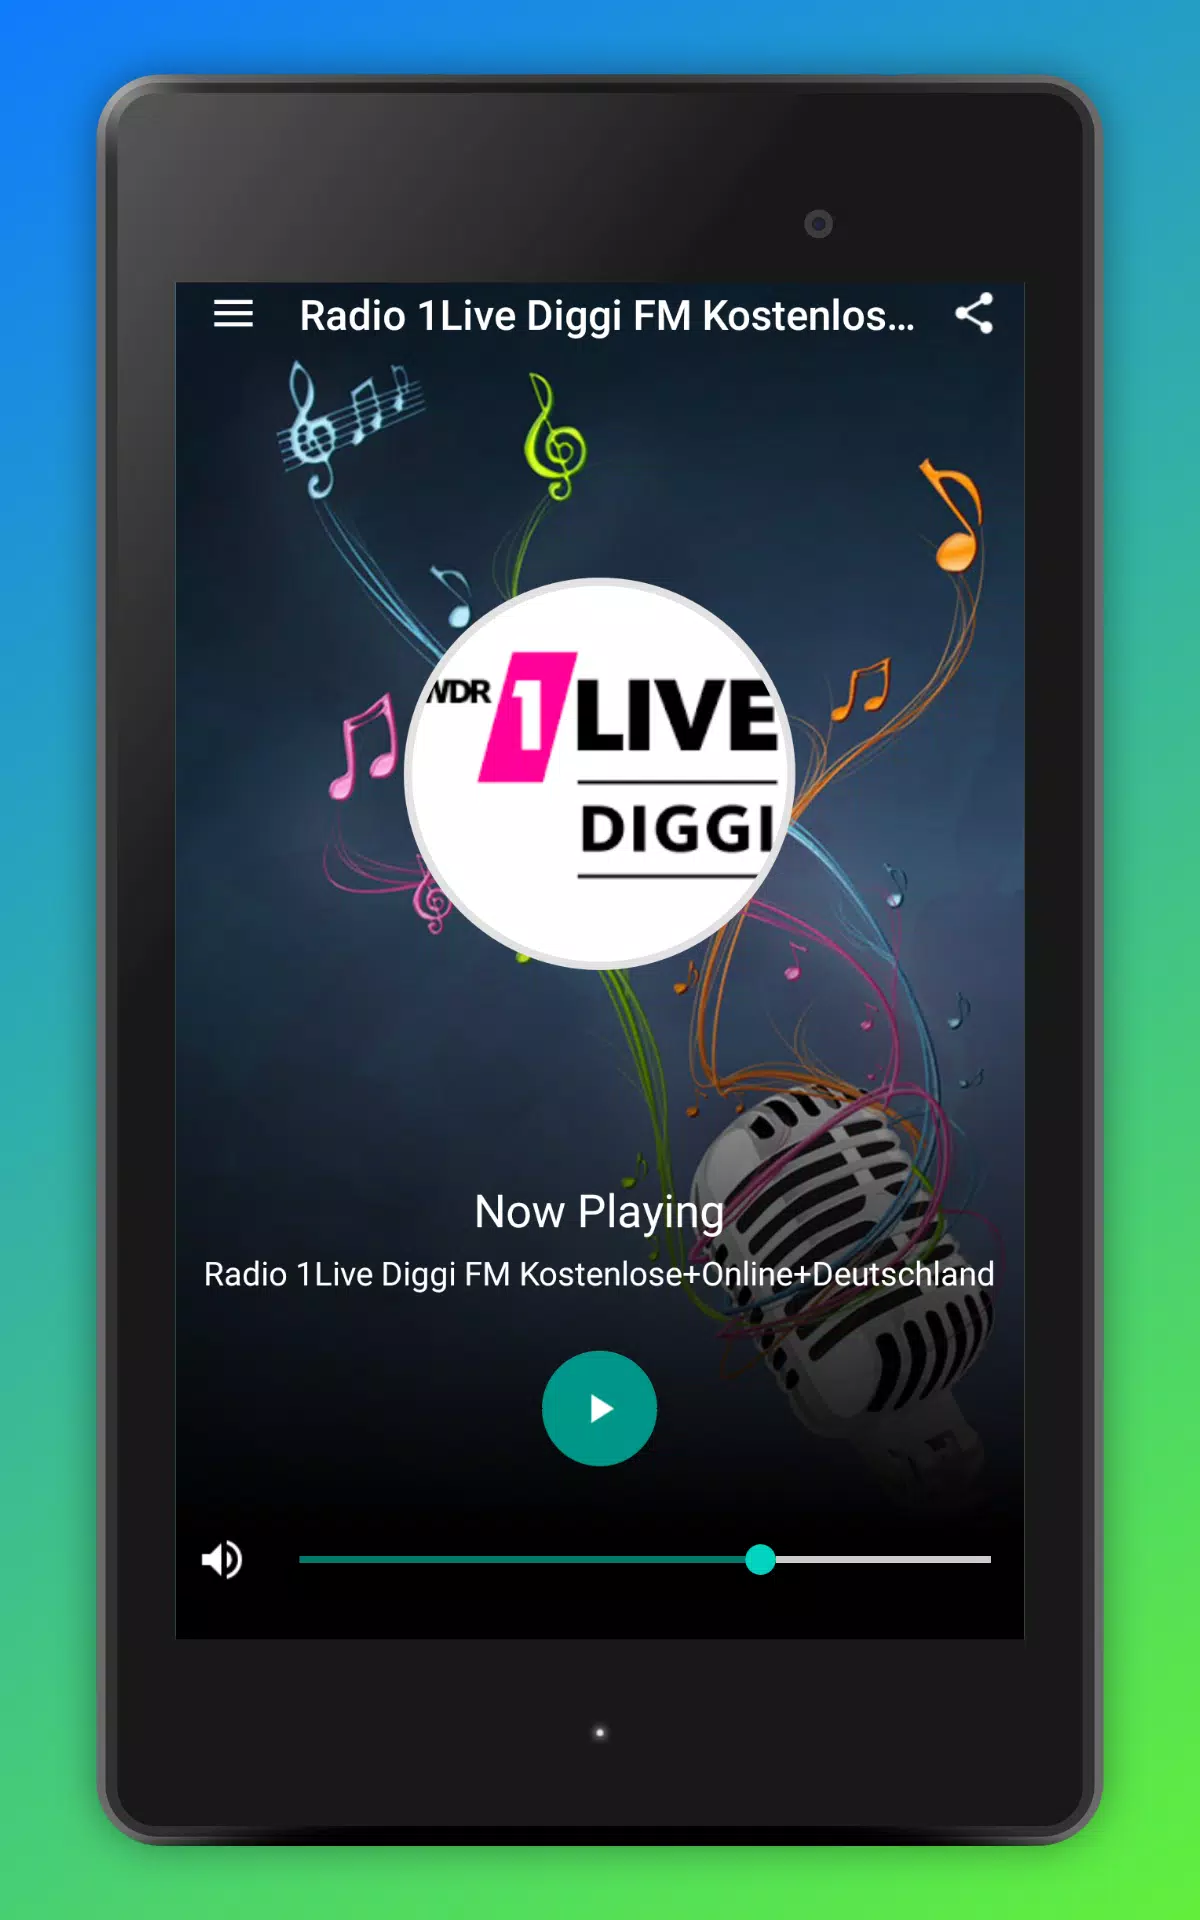 Radio 1Live Diggi FM Kostenlose+Online+Deutschland for Android - APK  Download